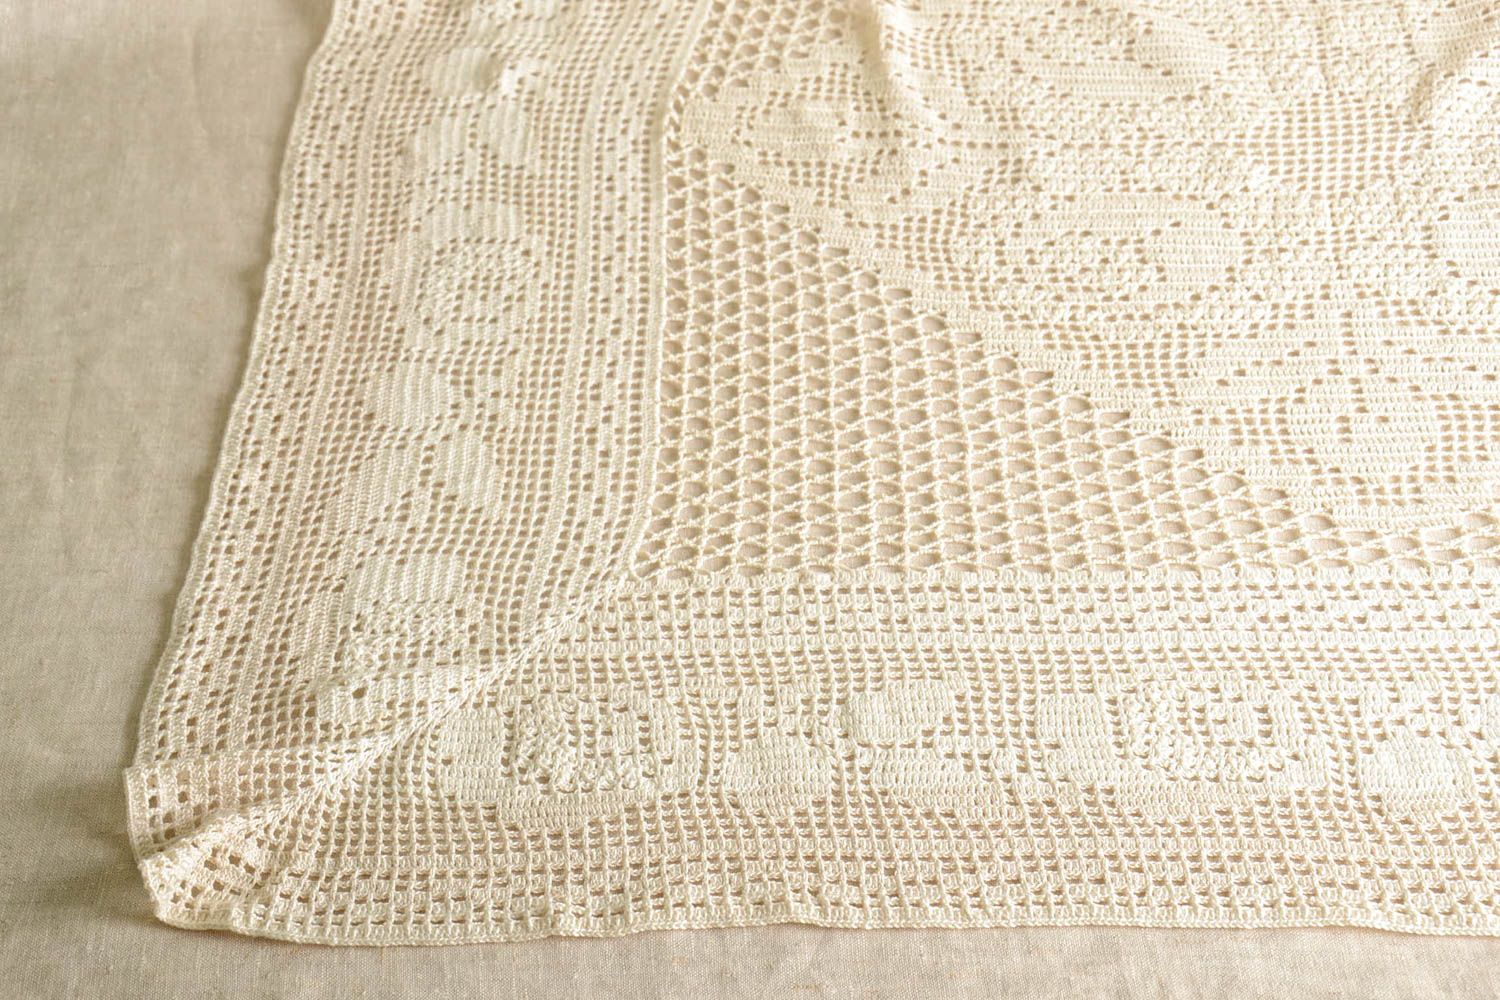 Handmade crocheted tablecloth unique designer textile kitchen interior decor photo 5